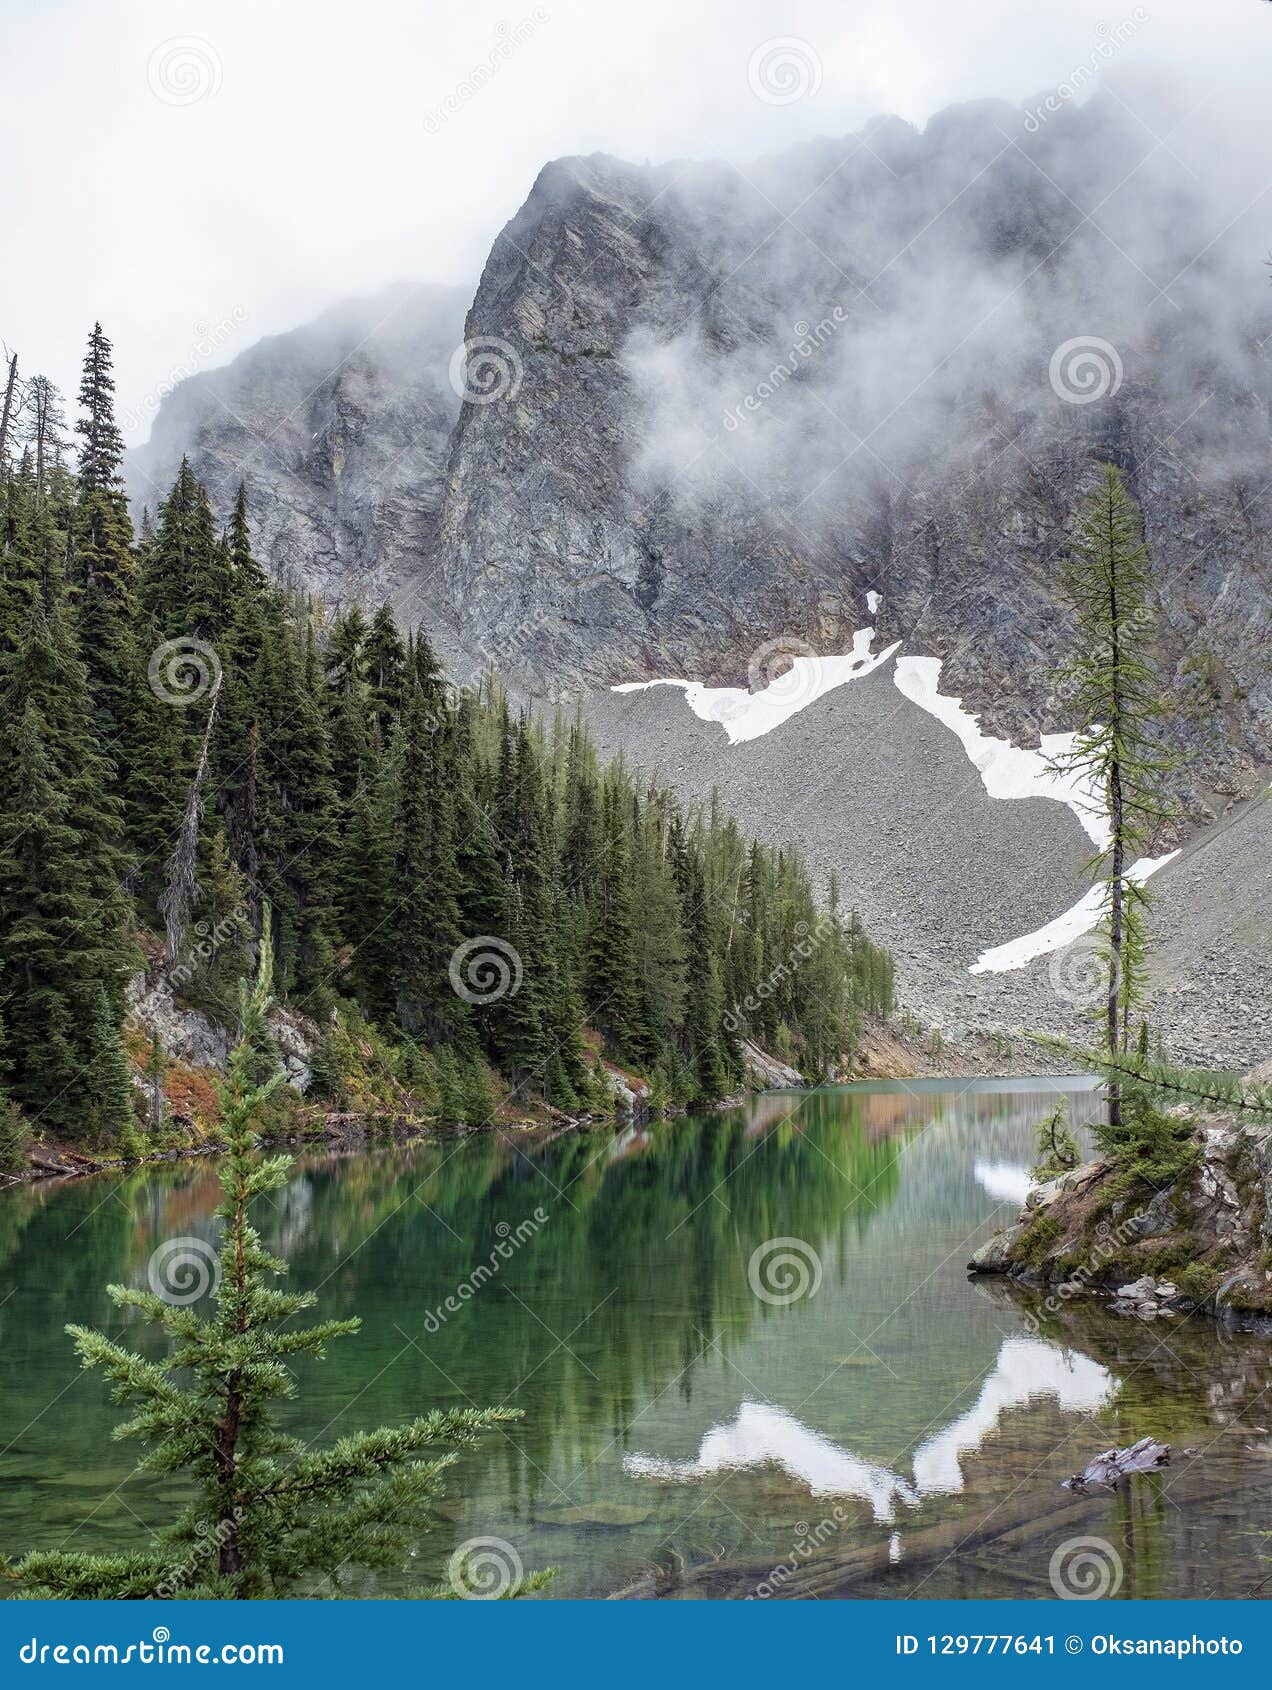 Top 102+ Images parque nacional de las cascadas del norte Superb